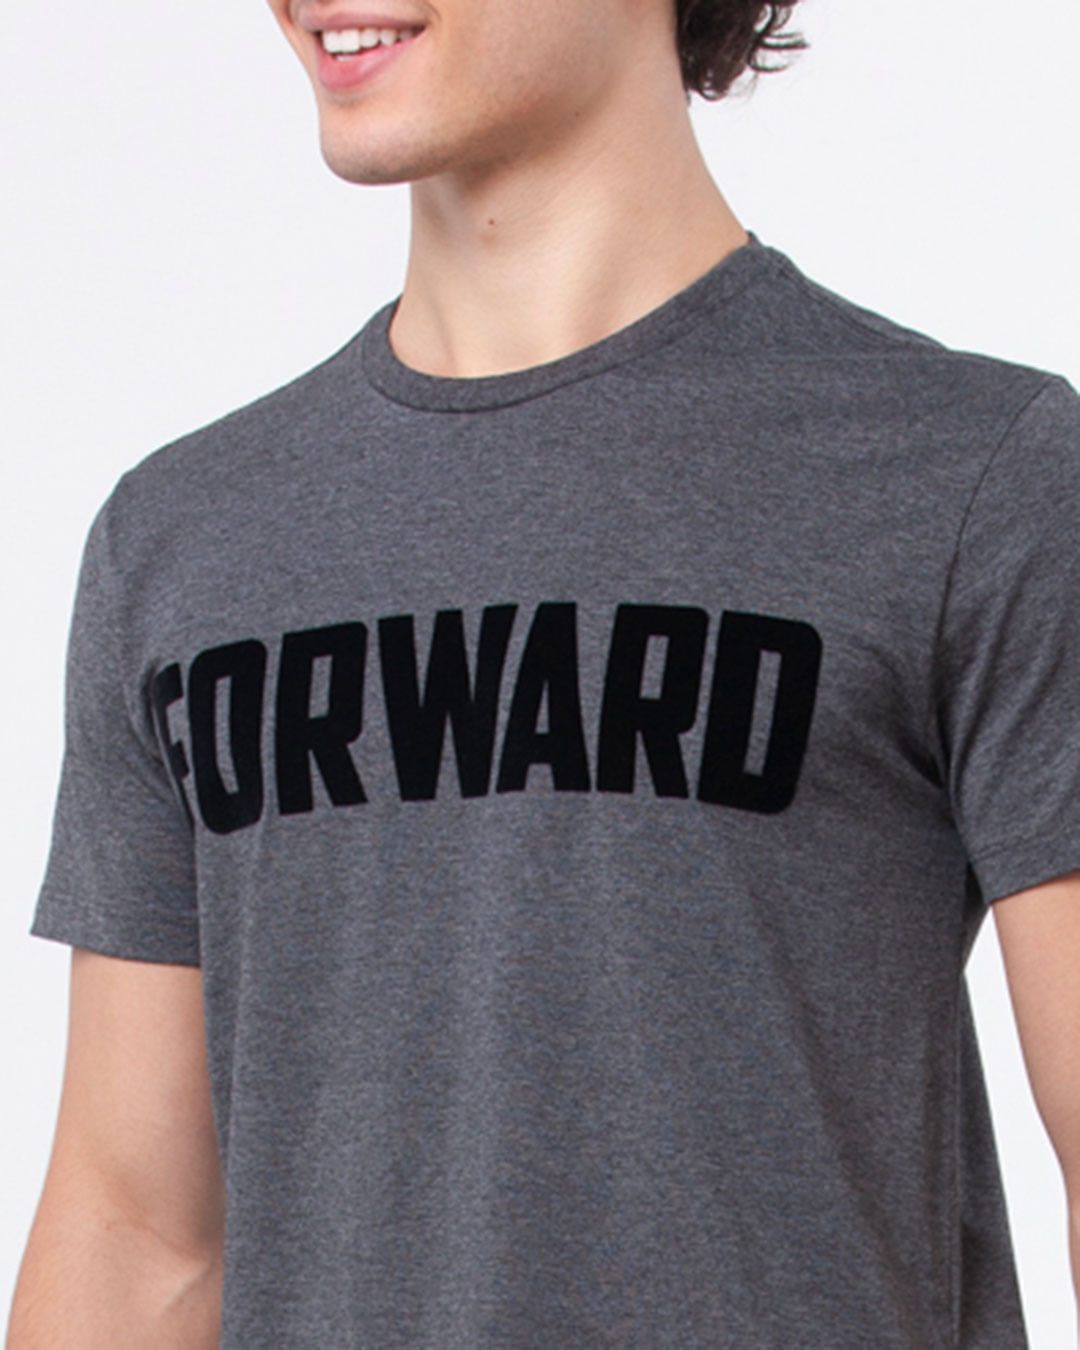 Camiseta-Masculina-Mescla-Regular-Estampa-Forward-Cinza